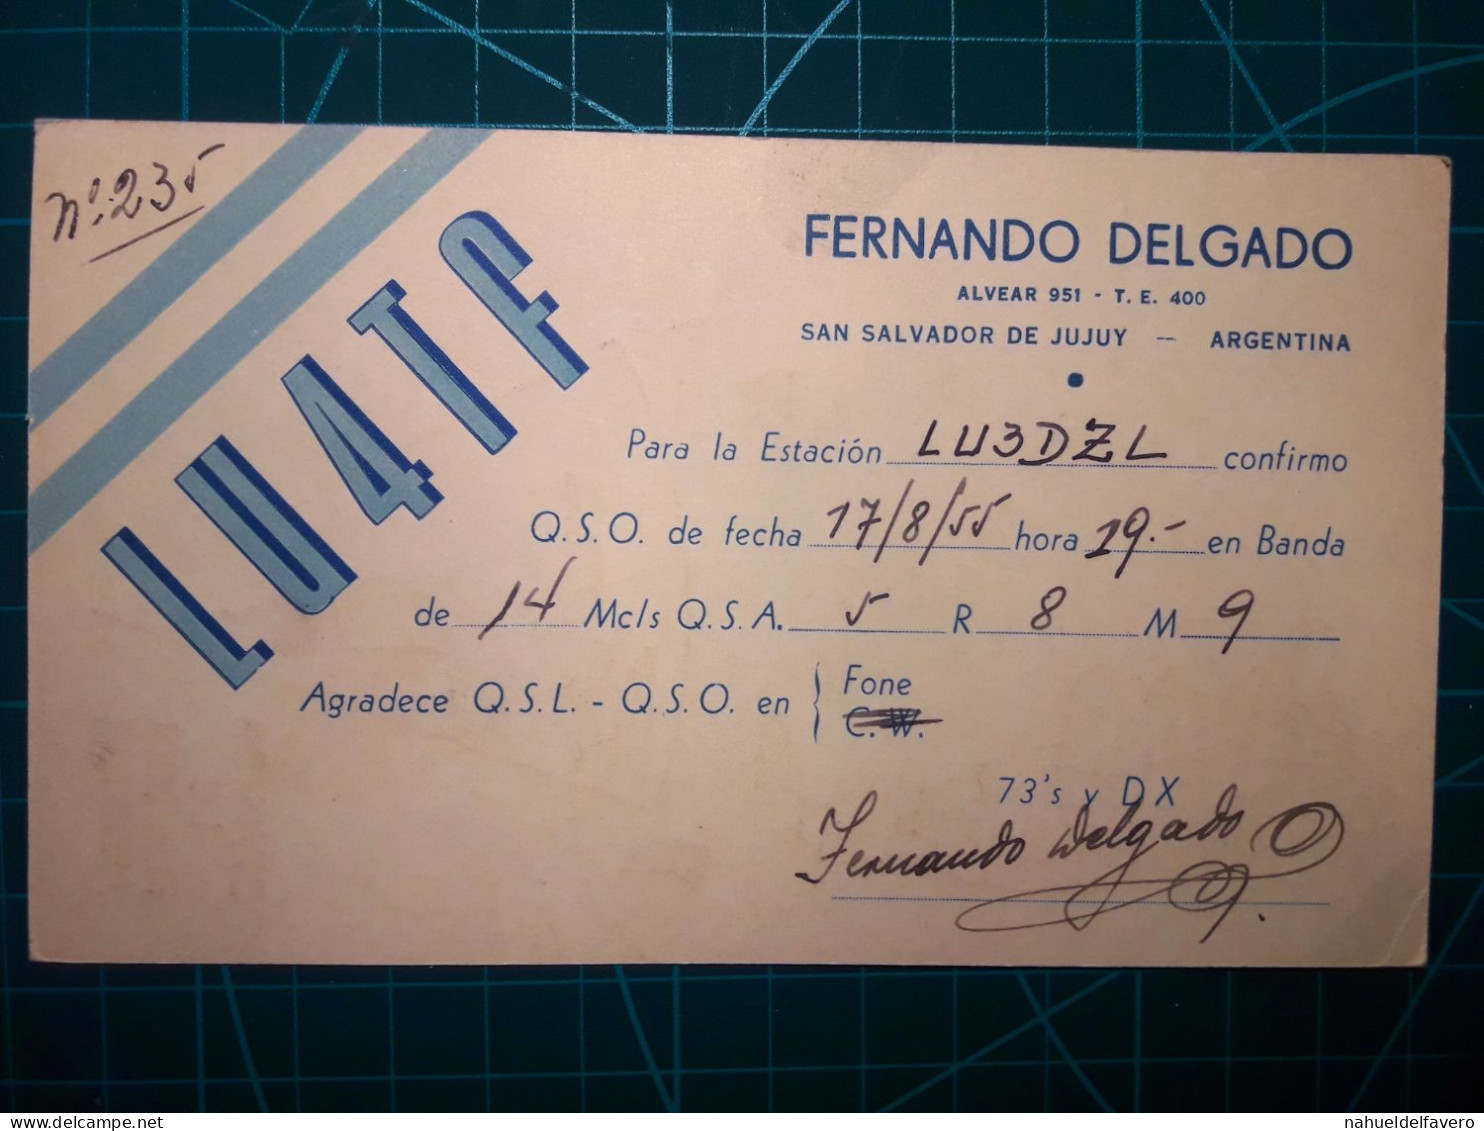 ARGENTINE, Carte QSL (Radio Connection Confirmation) Circulant D'un Radioamateur à L'autre. Région 2 (IARU) - Radio Amateur